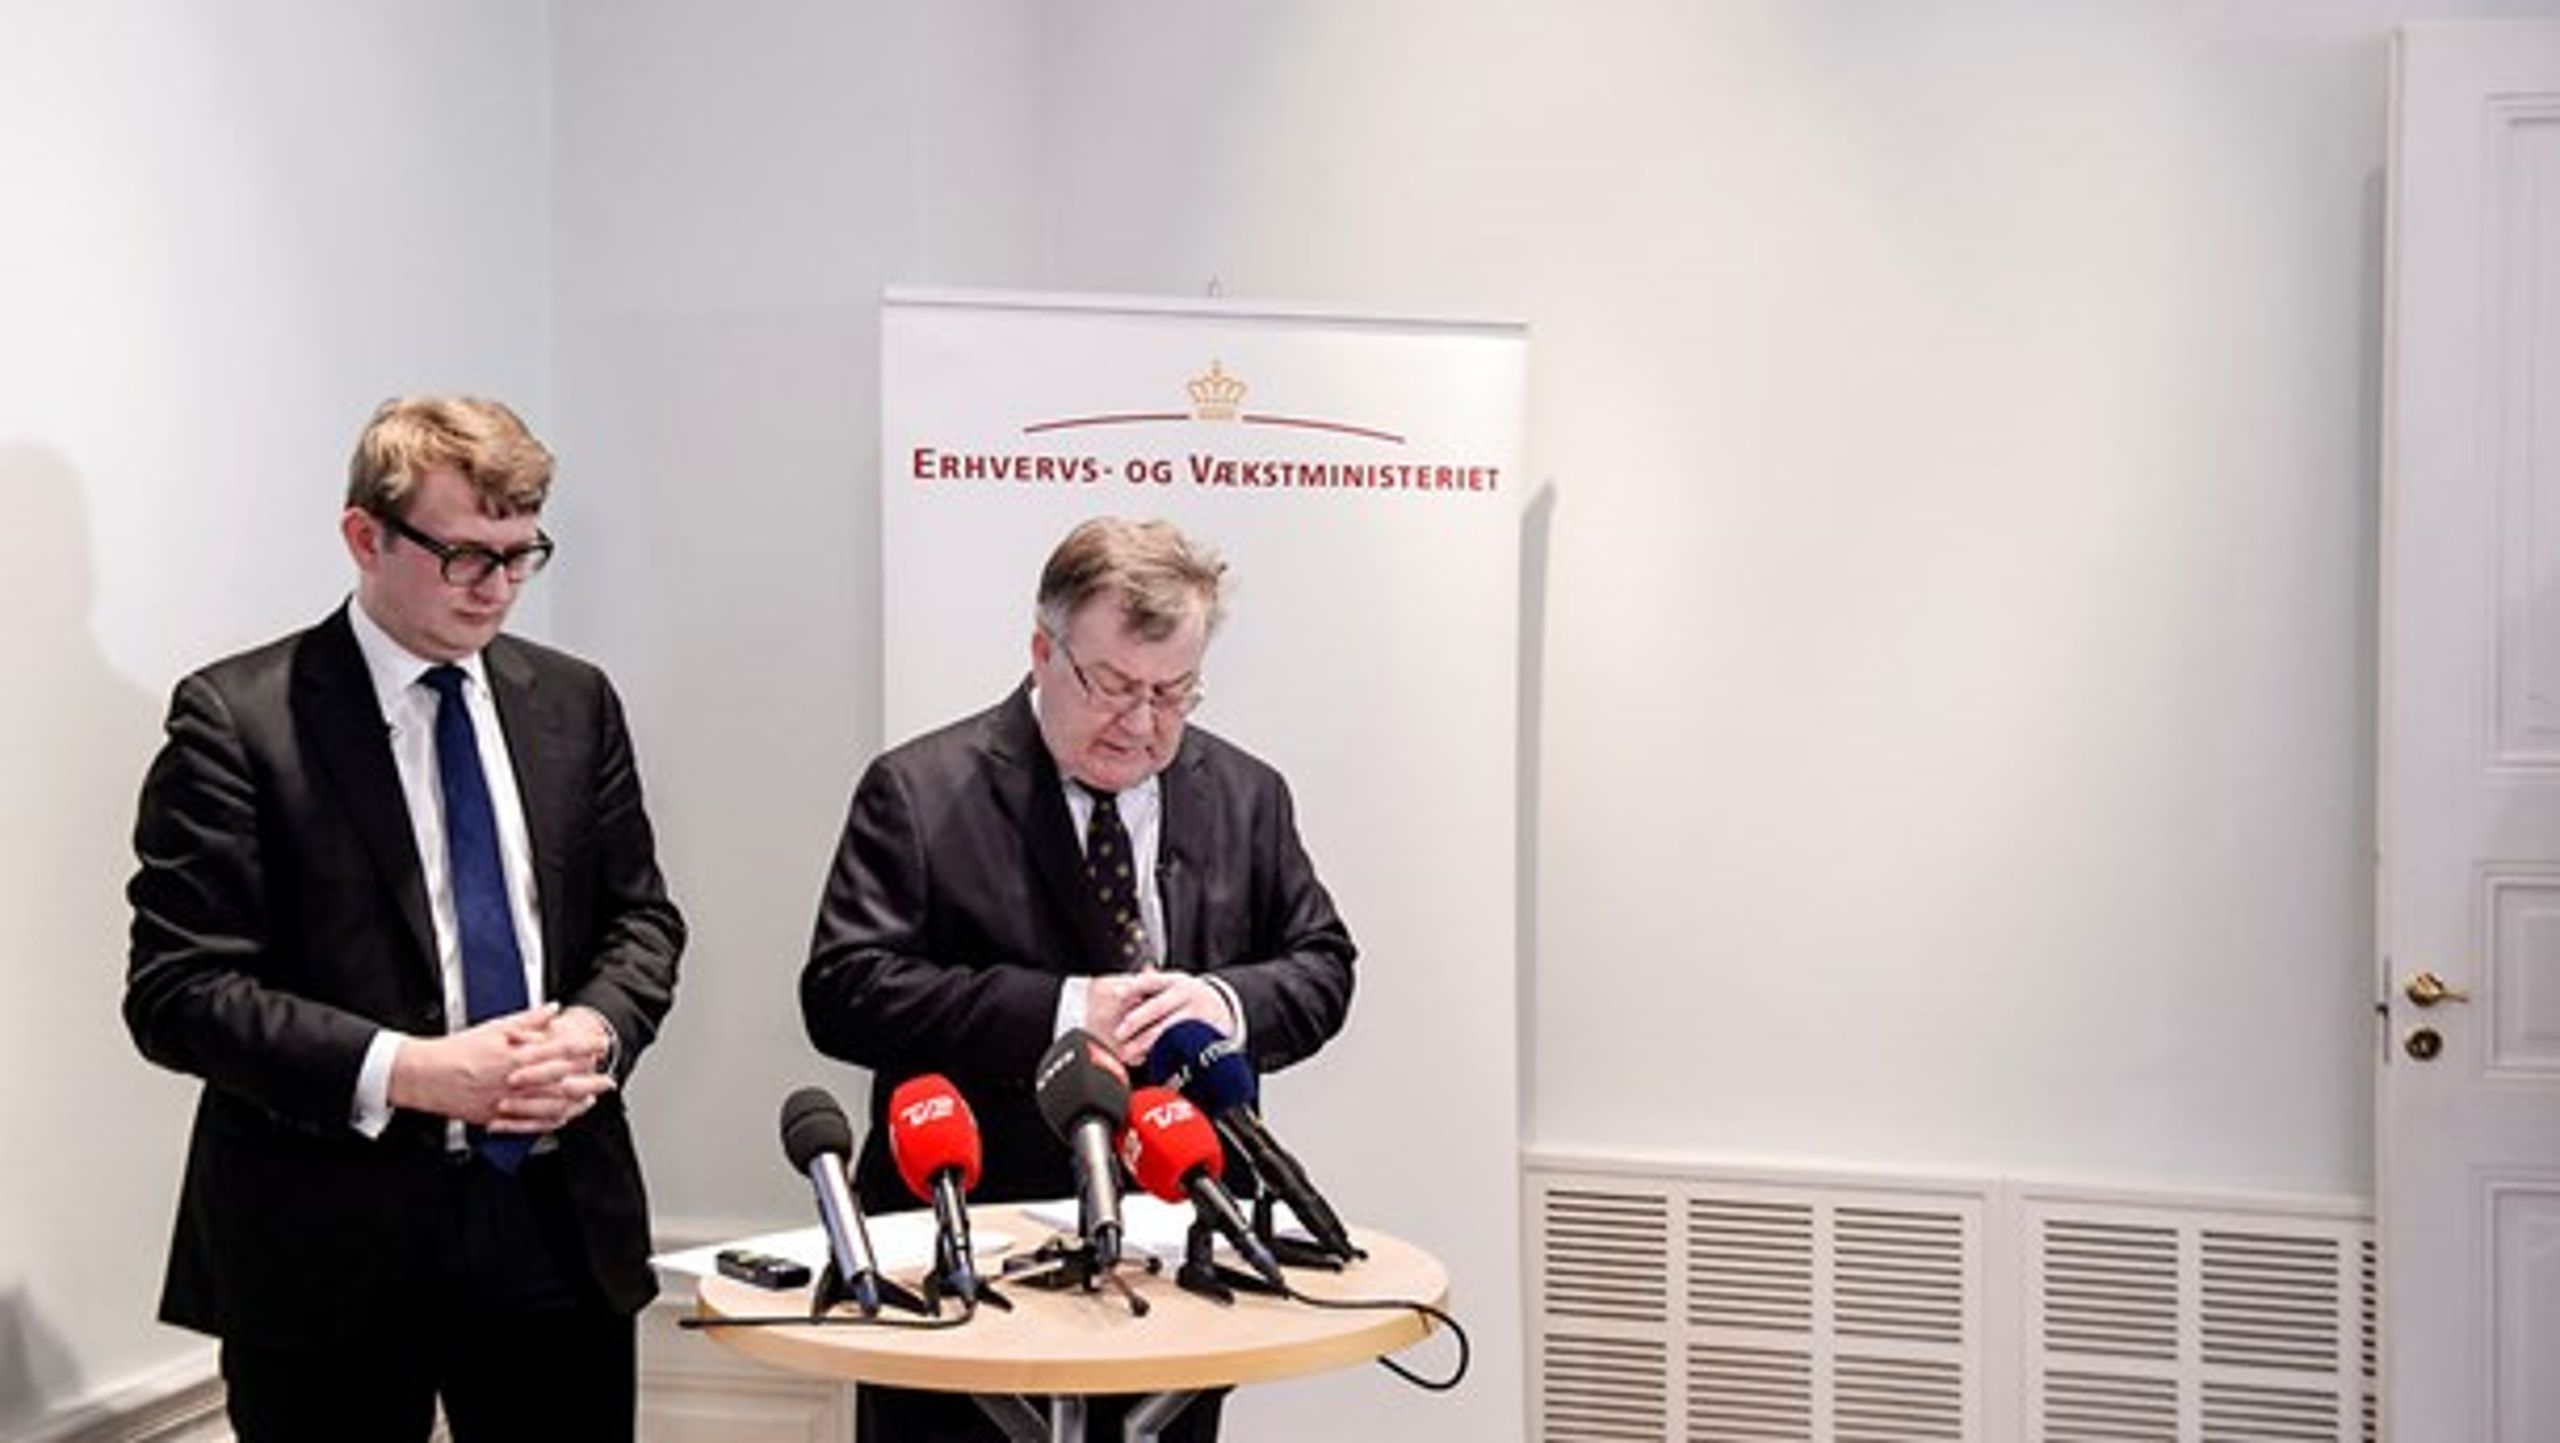 Erhvervsminister Troels Lund Poulsen (V) og finansminister Claus Hjort Frederiksen (V) har begge spillet afgørende roller i dette års by- og boligpolitik. Her præsenterer de omkostningerne ved statens udflytningsplaner.<br>